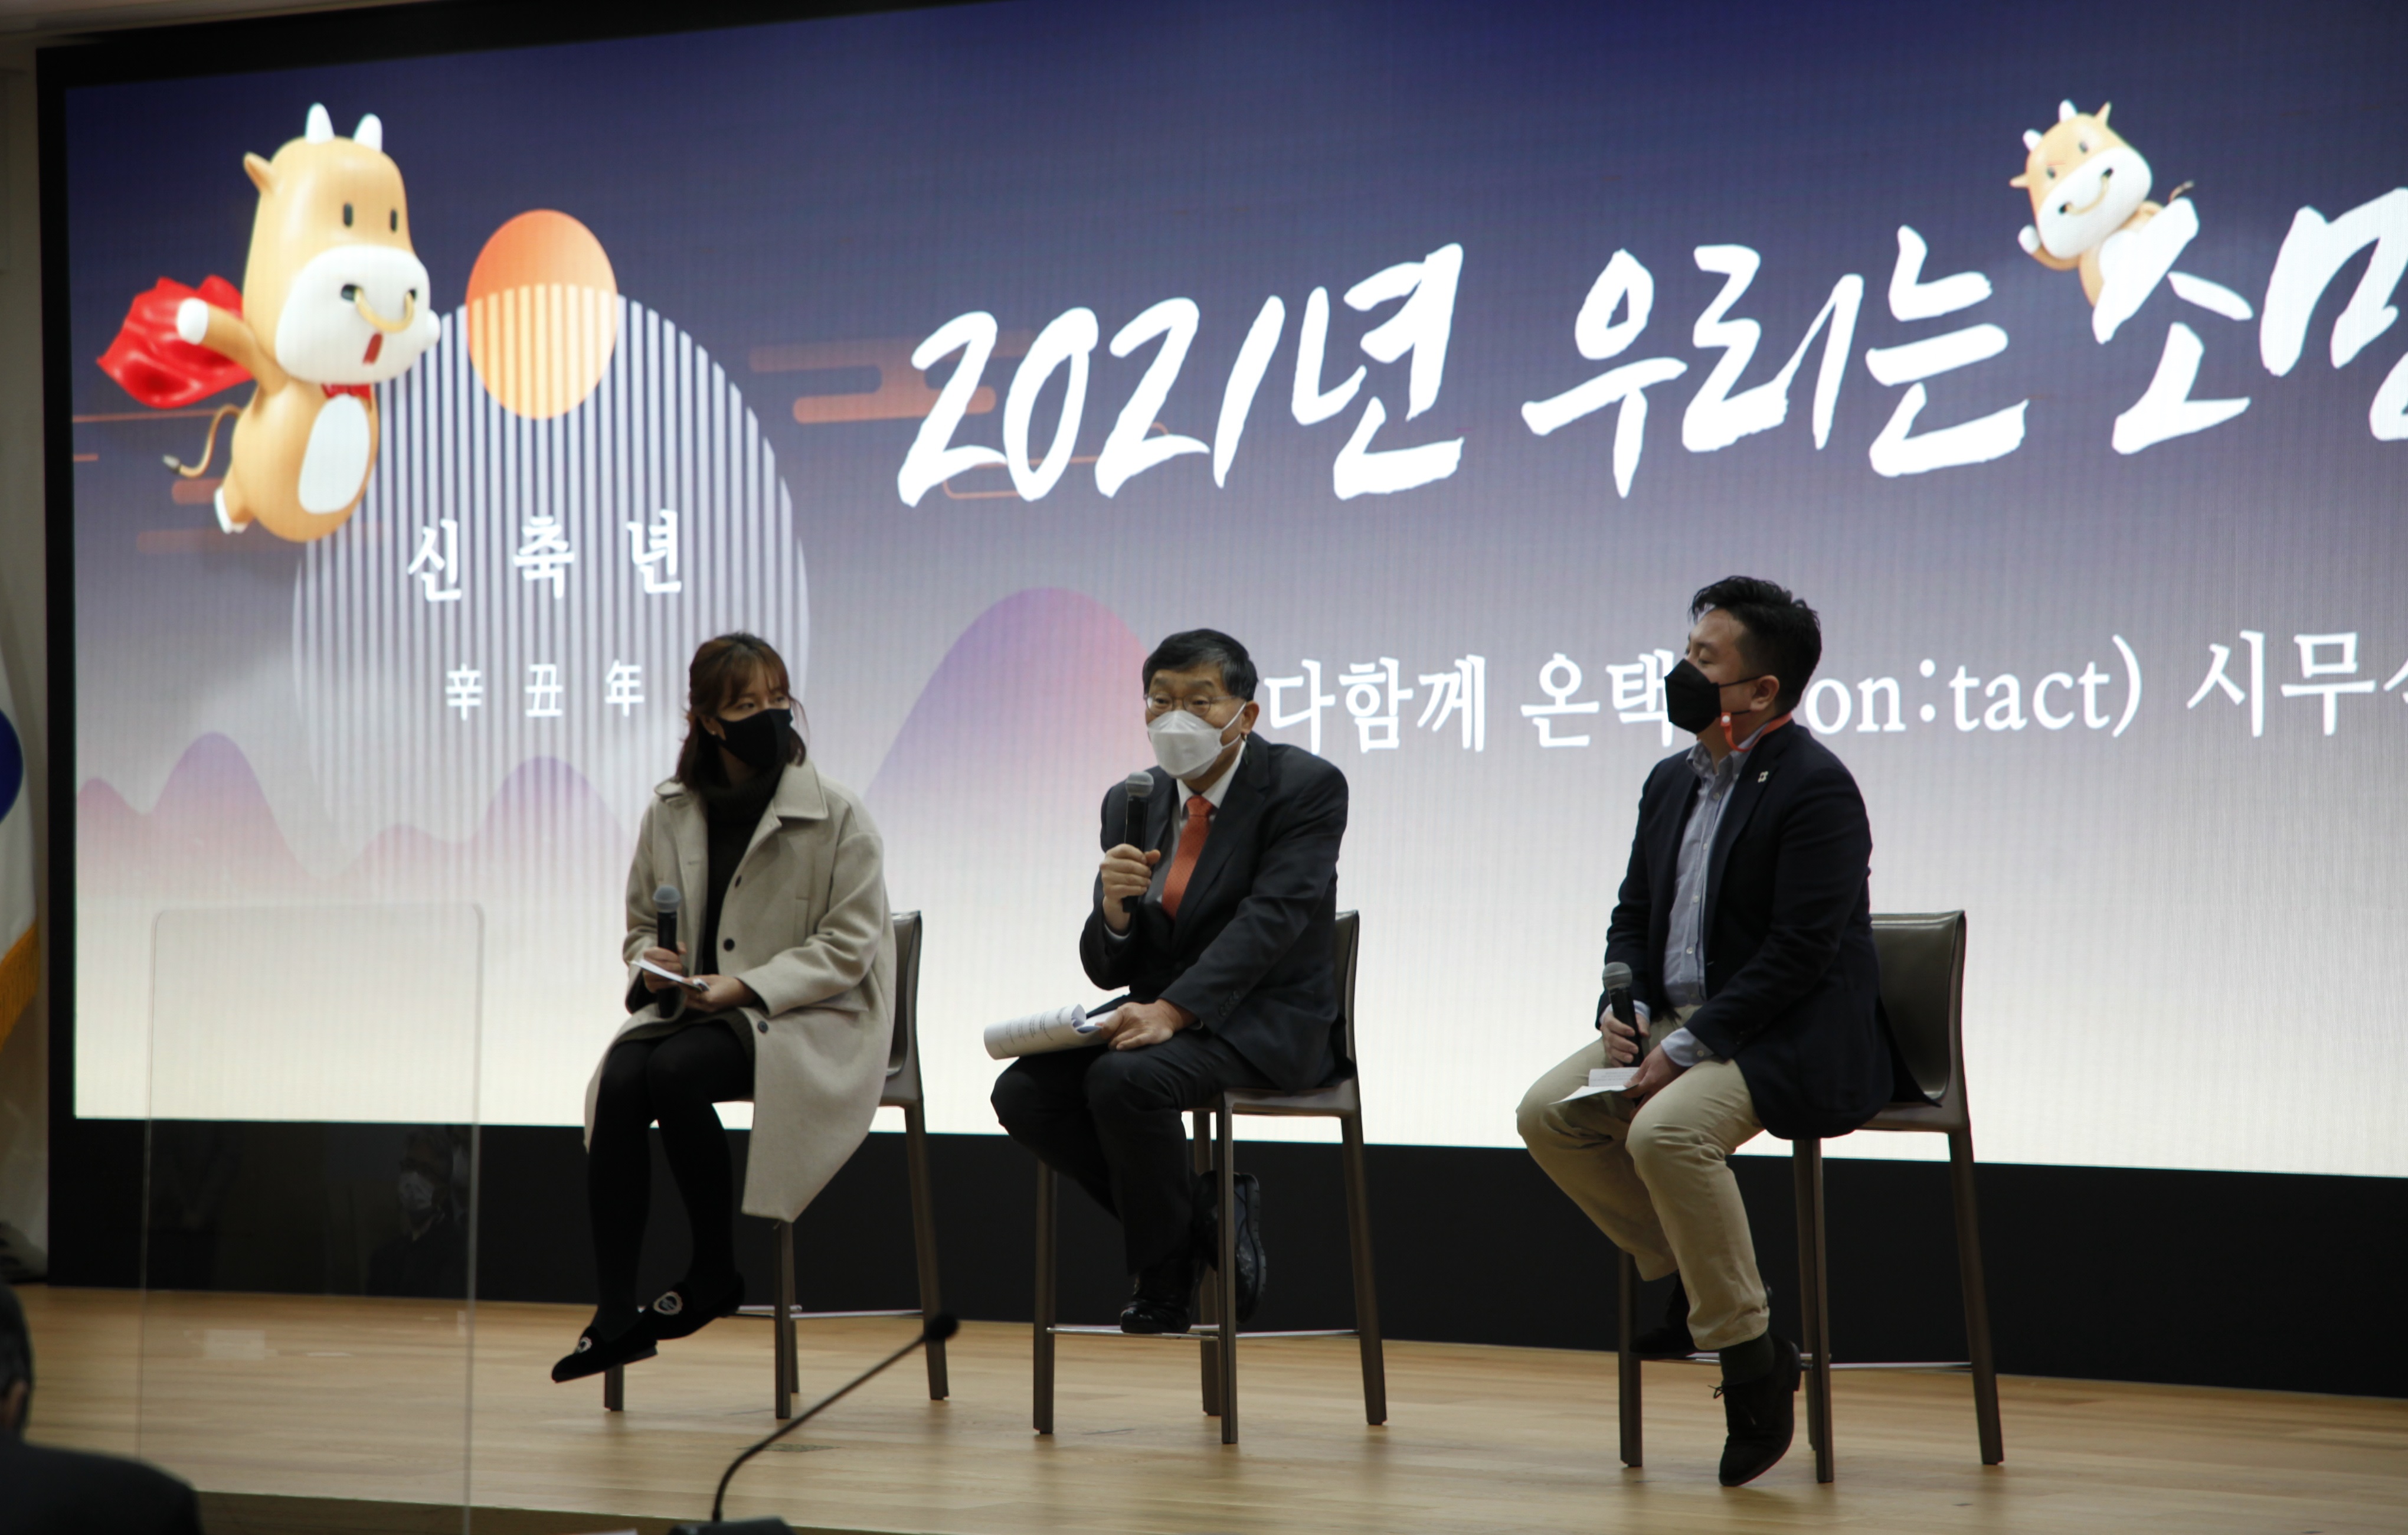 ​​국토연구원 온택트(on:tact) 시무식 개최​​